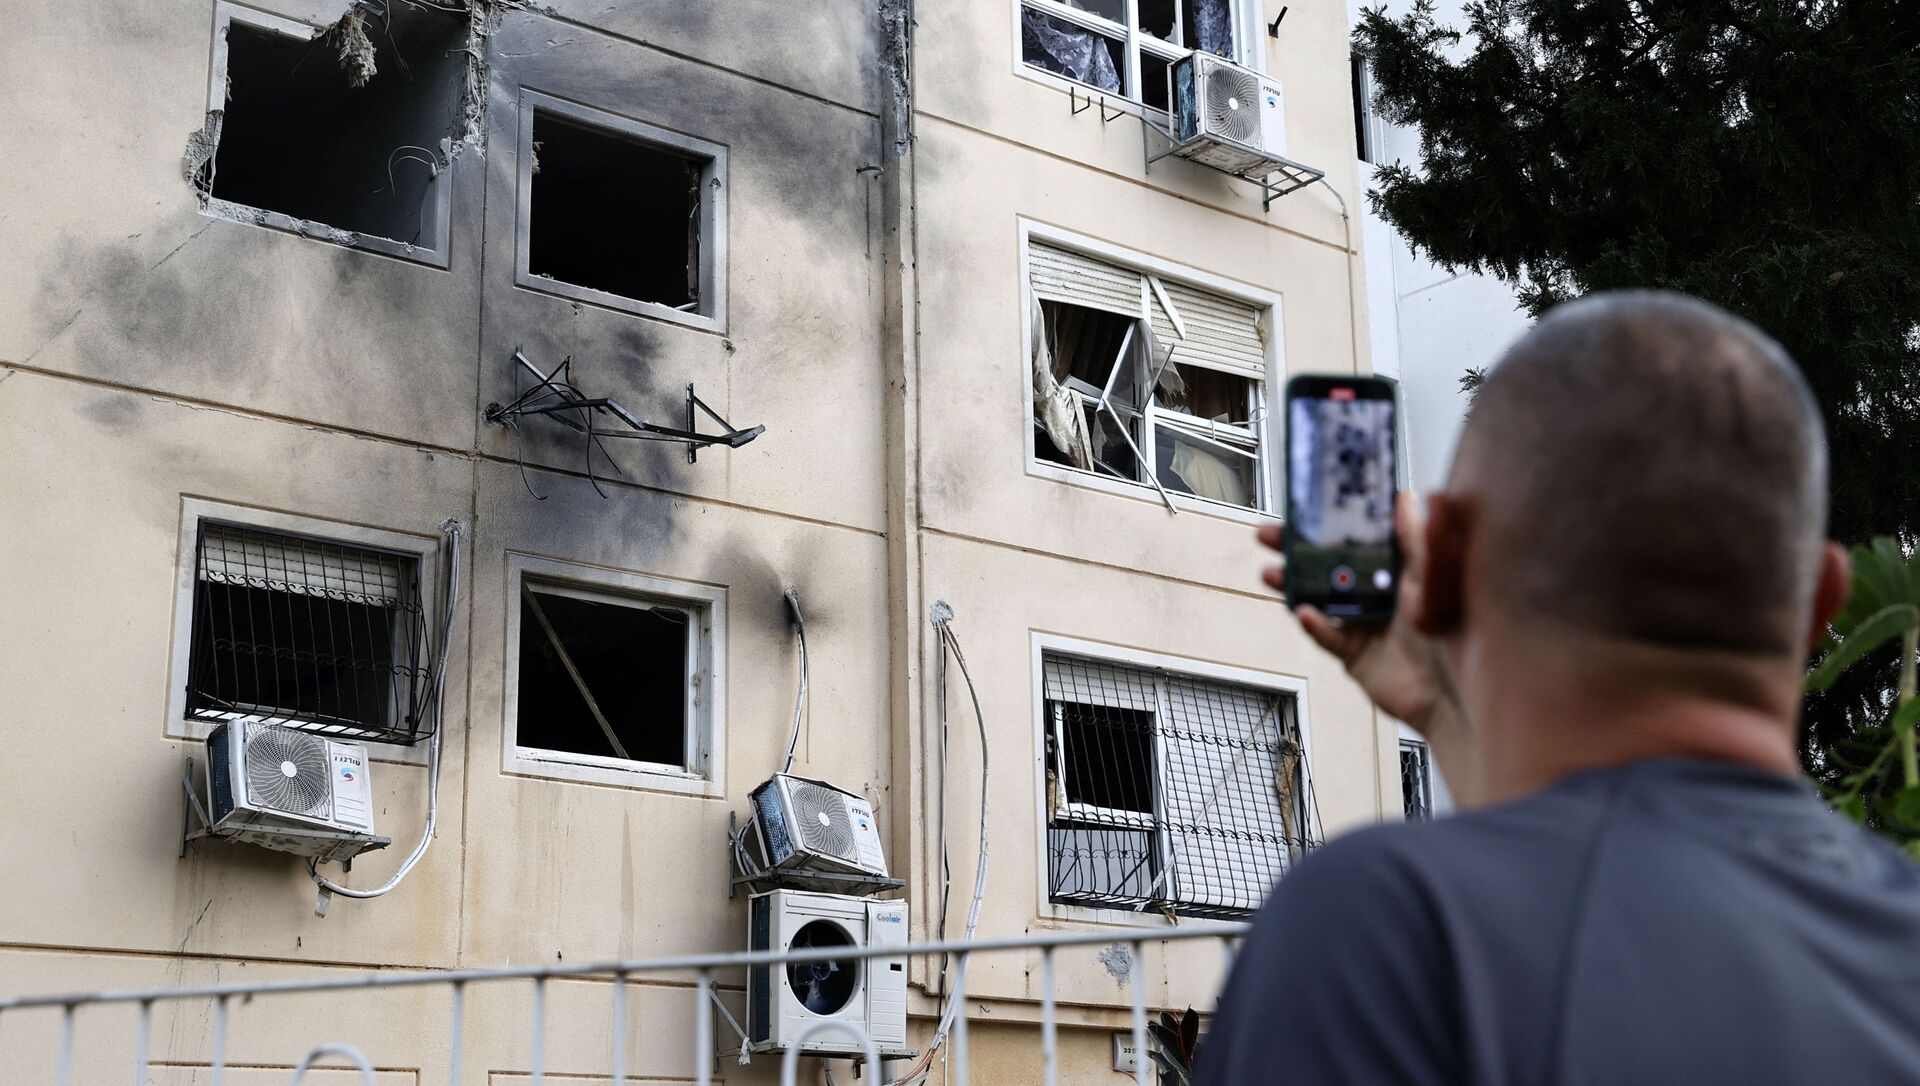 Израильтянин фотографирует поврежденный фасад здания в городе Ашкелон на юге Израиля, 11 мая 2021 года  - Sputnik Азербайджан, 1920, 19.05.2021